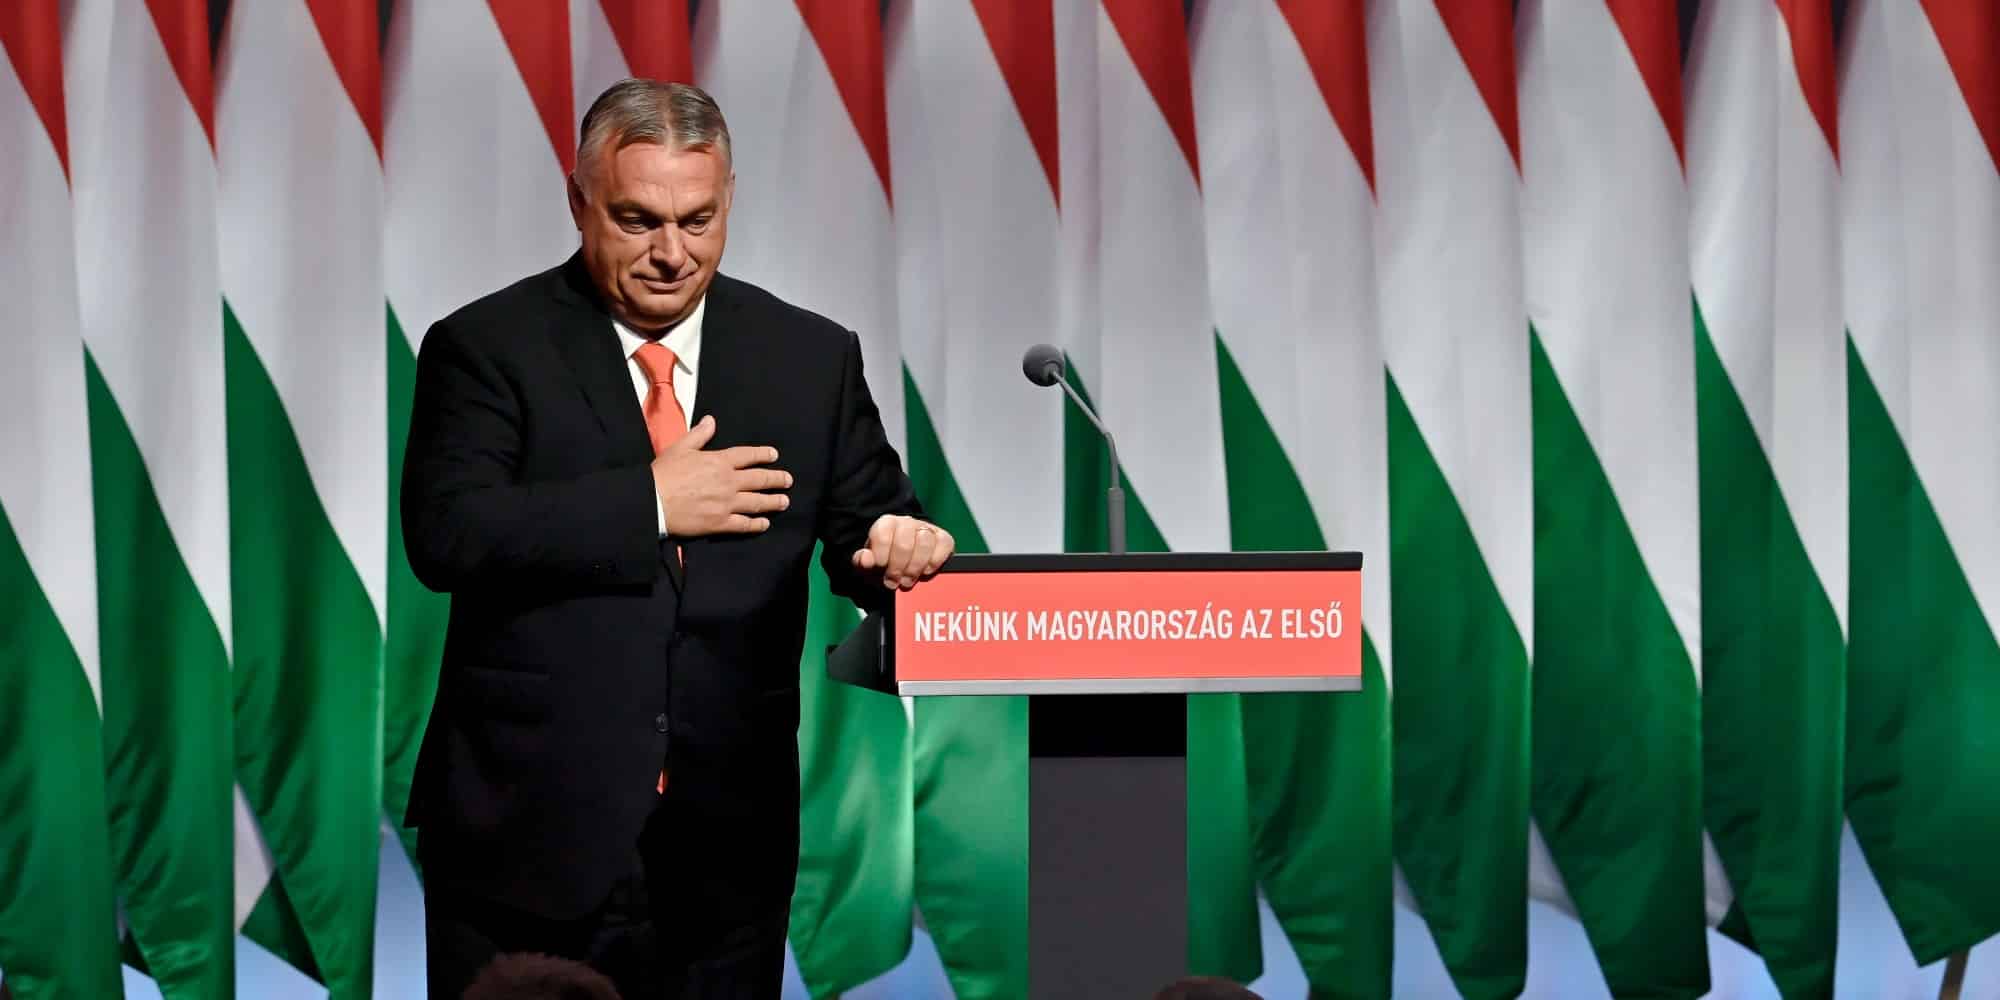 Ο πρωθυπουργός της Ουγγαρίας Βίκτορ Ορμπάν